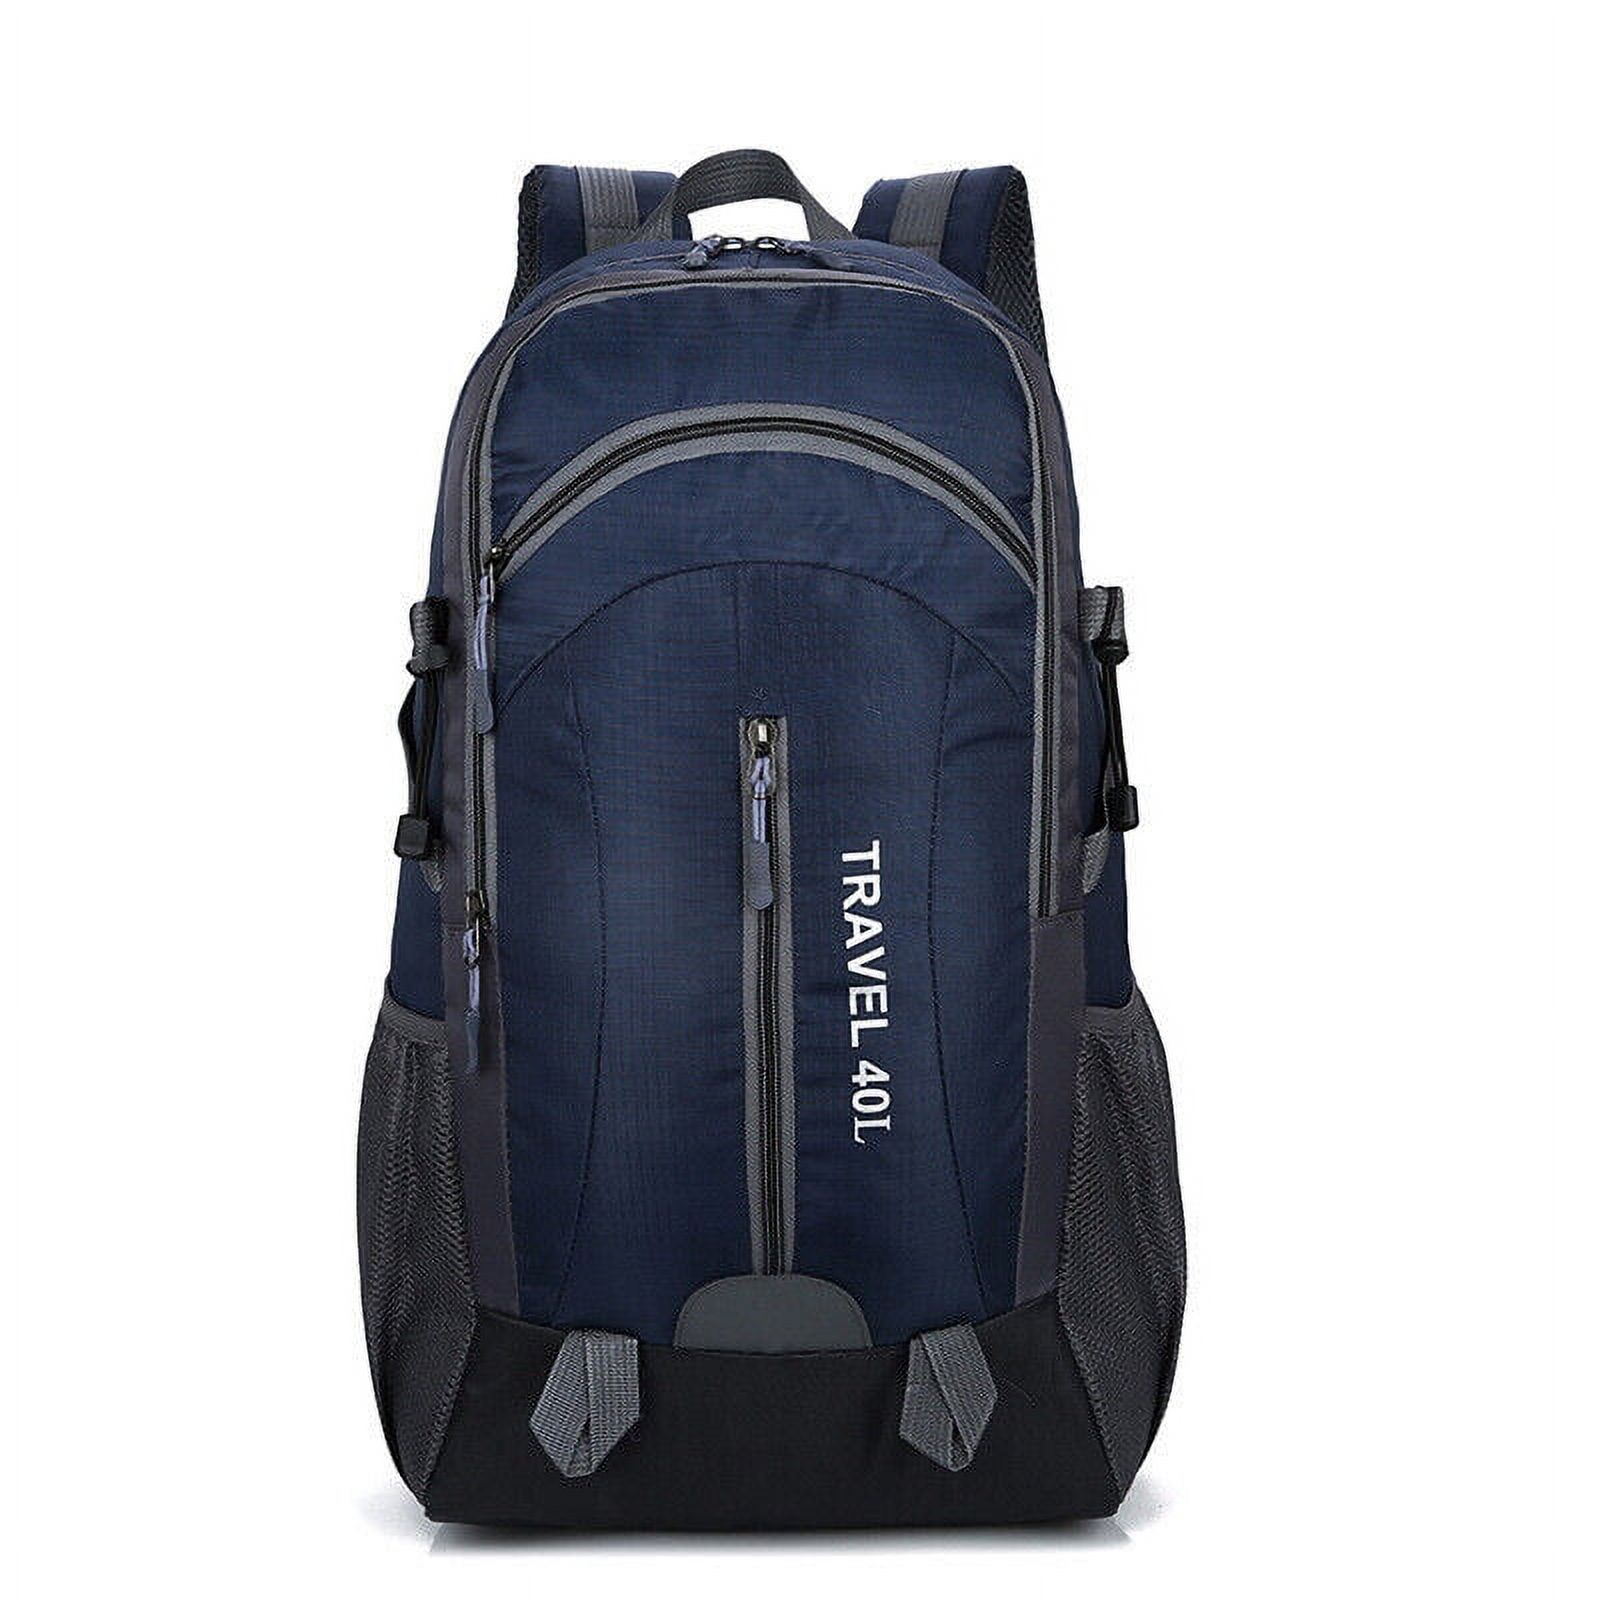 Packable Handy Lightweight Waterproof Travel Hiking Backpack Daypack ...